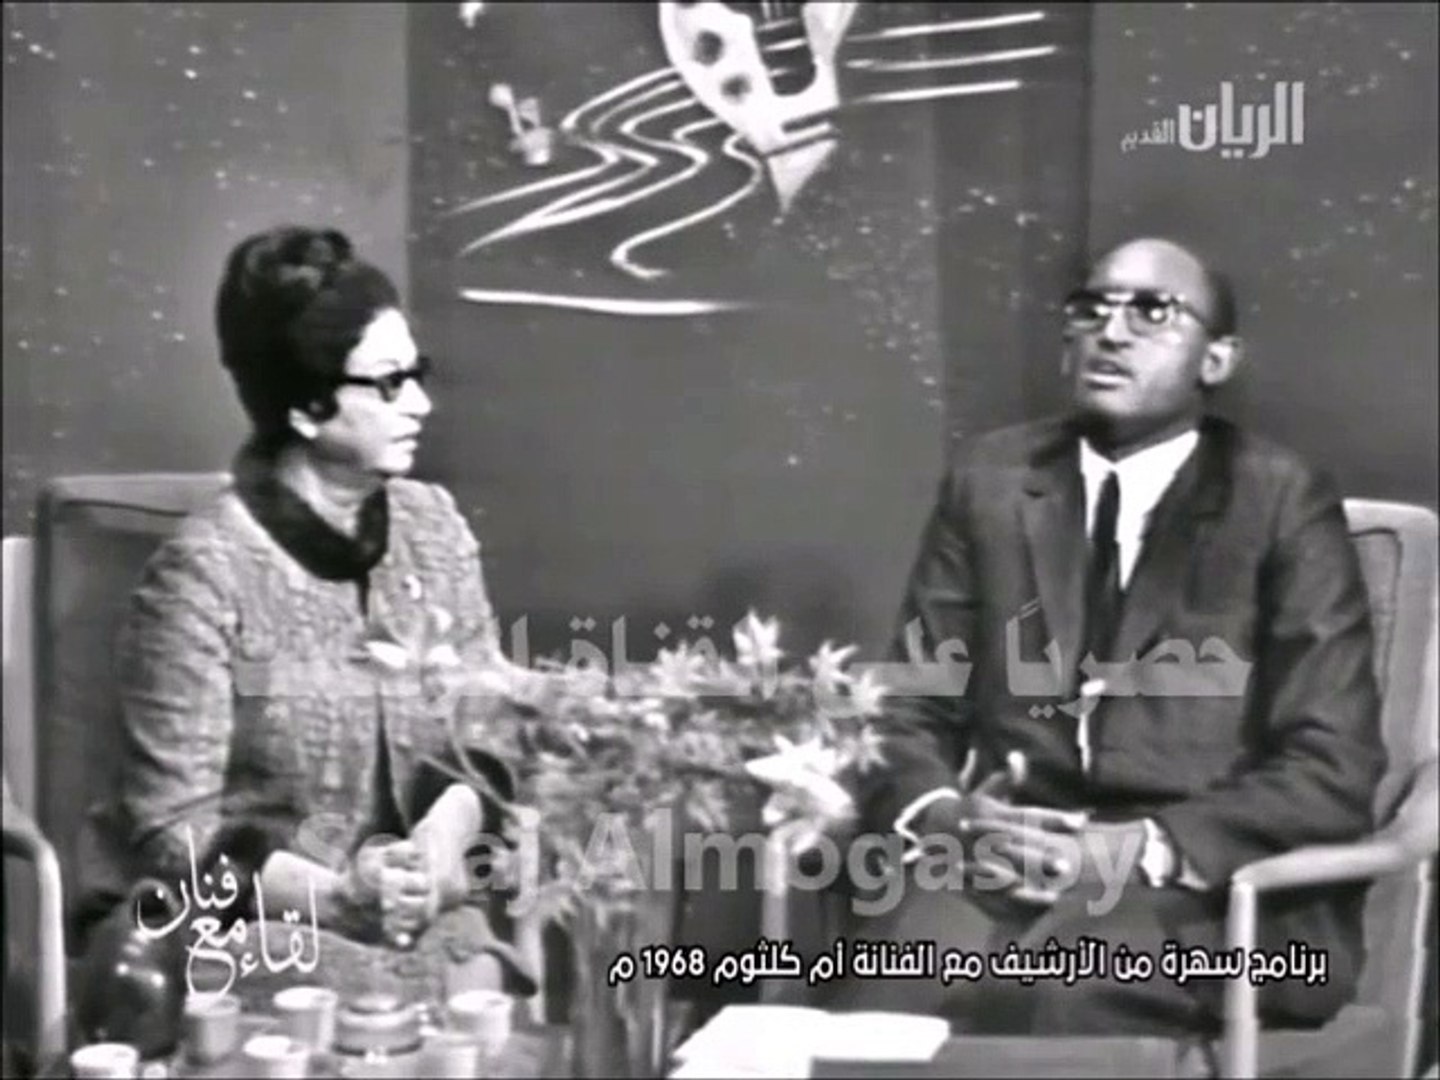 سيدة الغناء العربي السيدة ام كلثوم في السودان 1968 - video Dailymotion